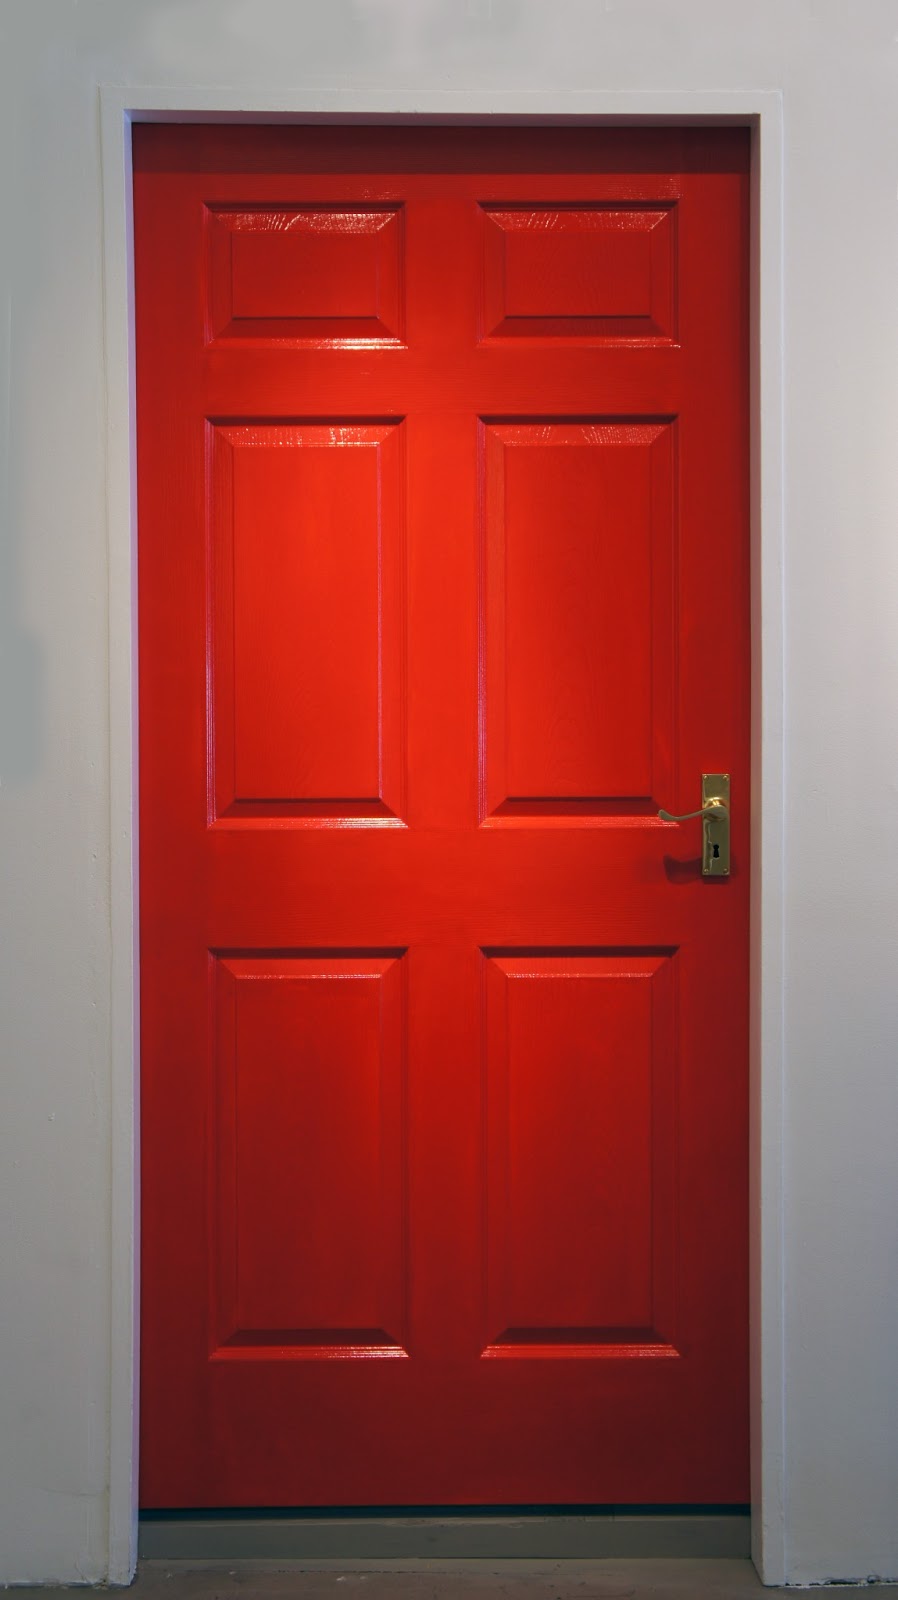 Behind The Red Door Book